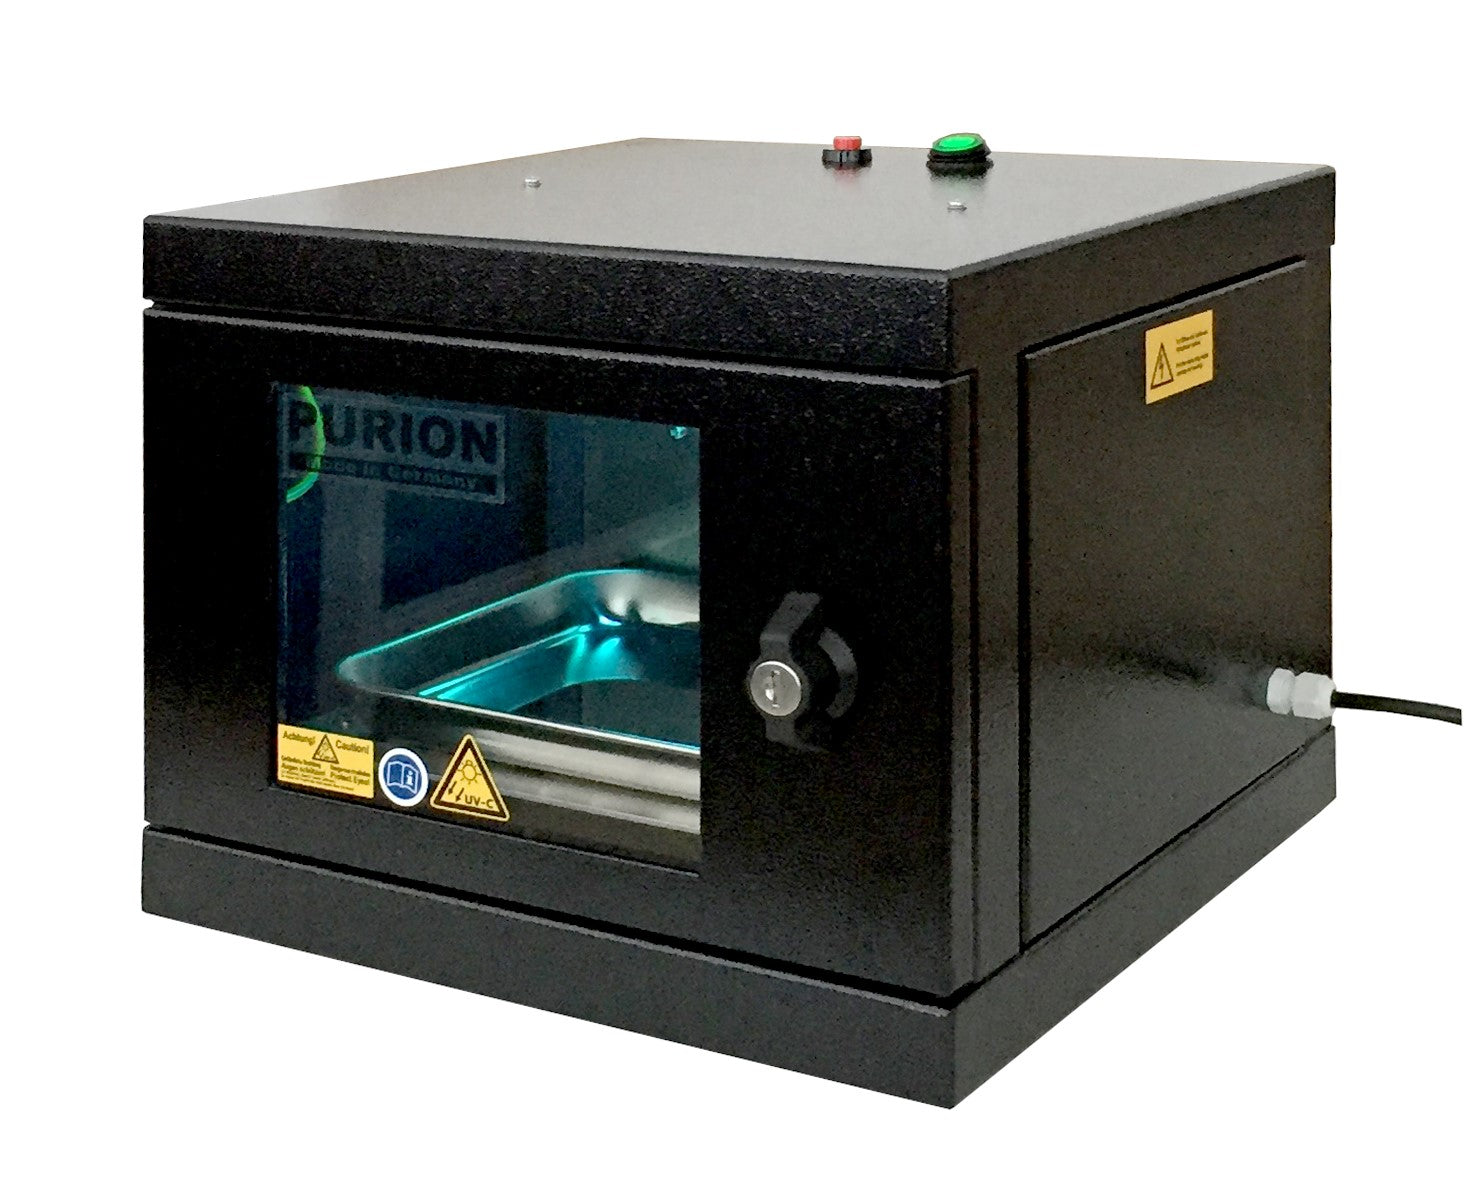 Eine PURION UVC Box Small Basic zur Desinfektion von Gegenständen zur Beseitigung von Keimen. Die Box verfügt über ein blaues Licht. (Markenname: PURION GmbH)